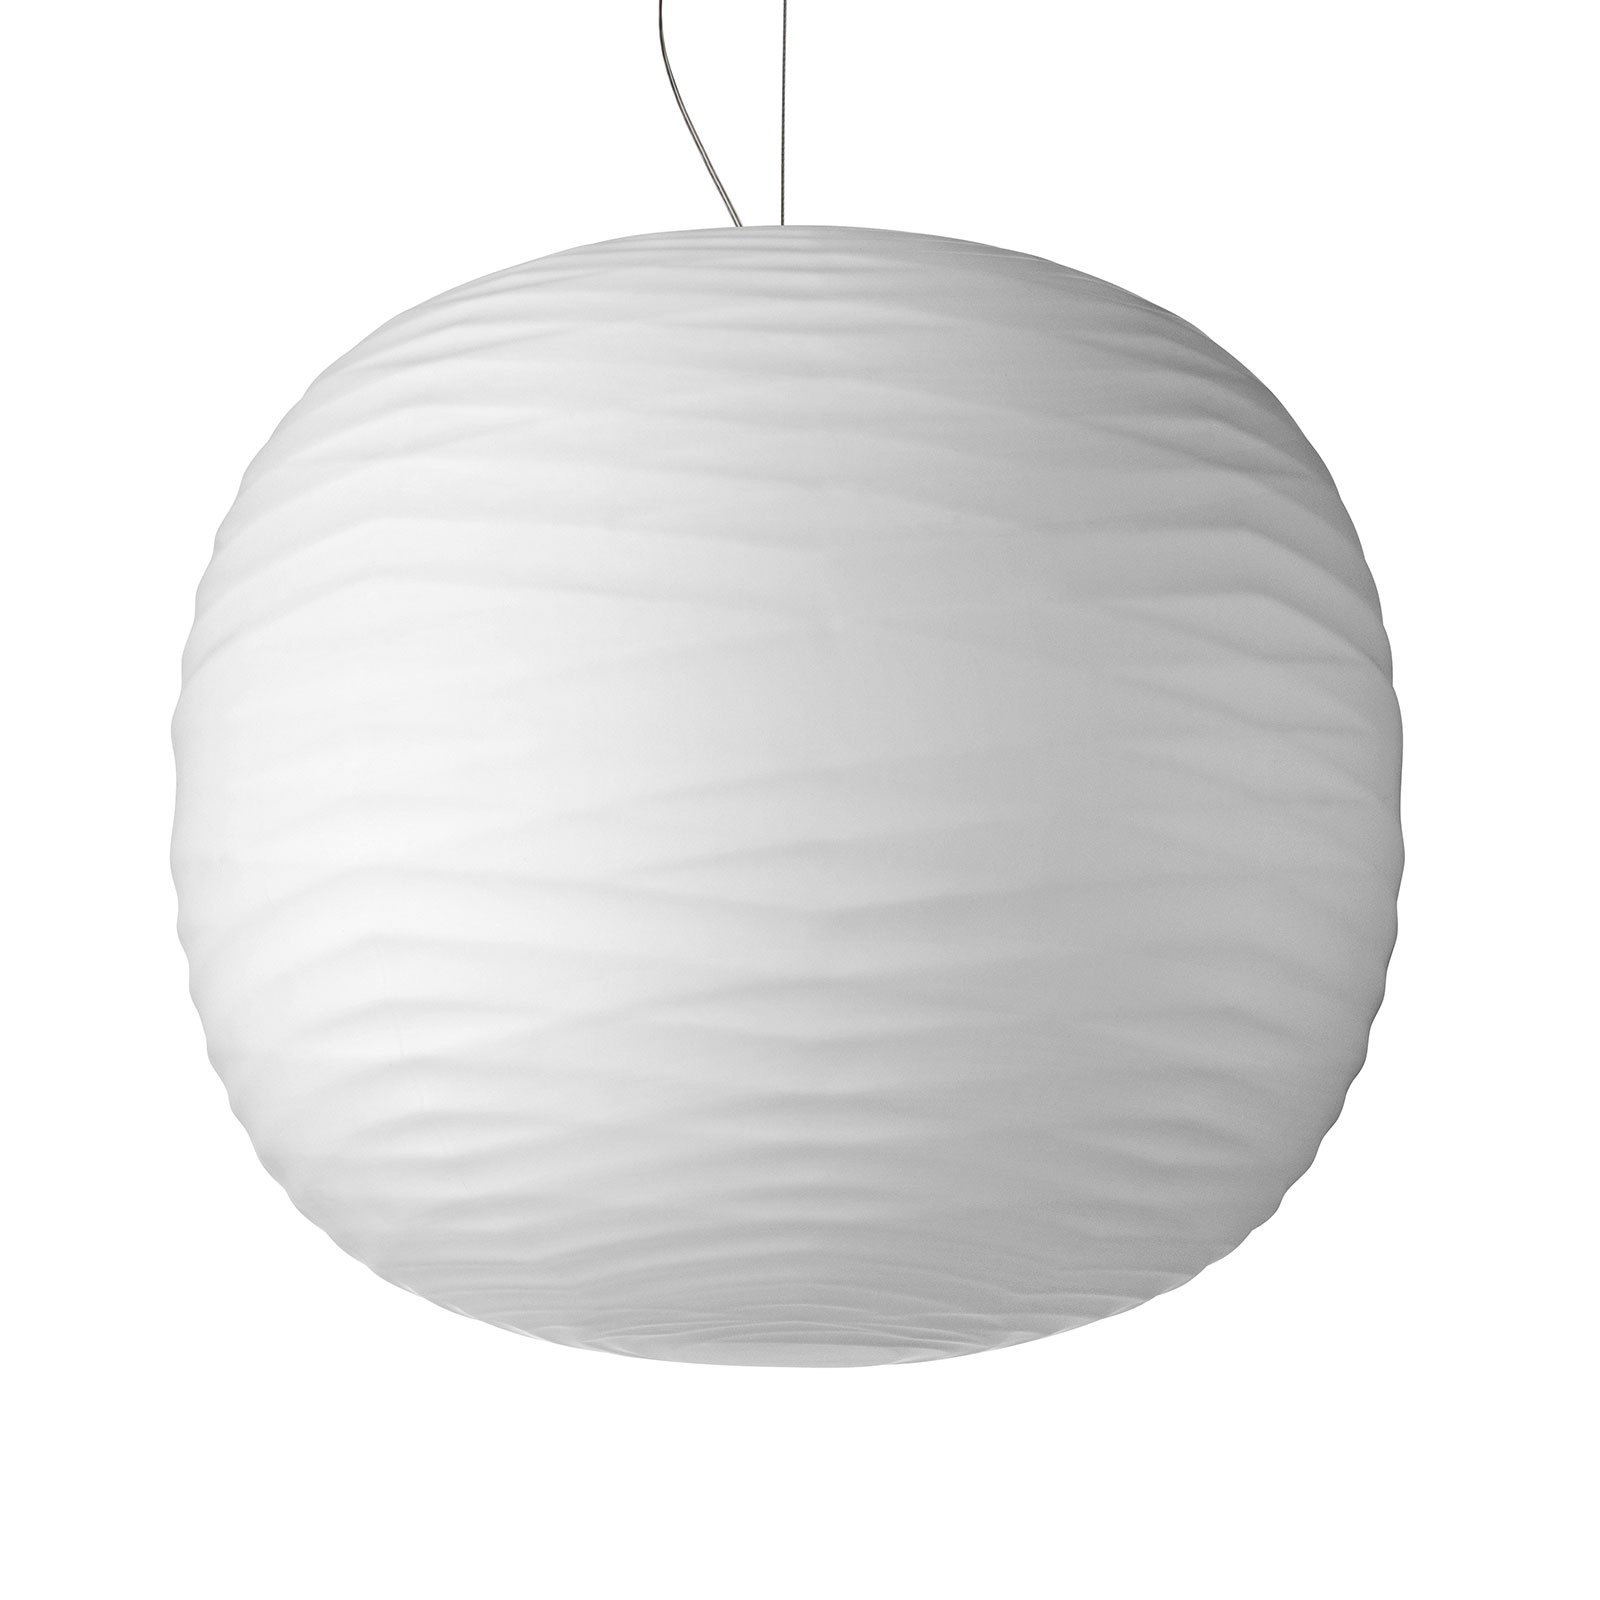 Foscarini Gem E27 LED pendant light made of glass